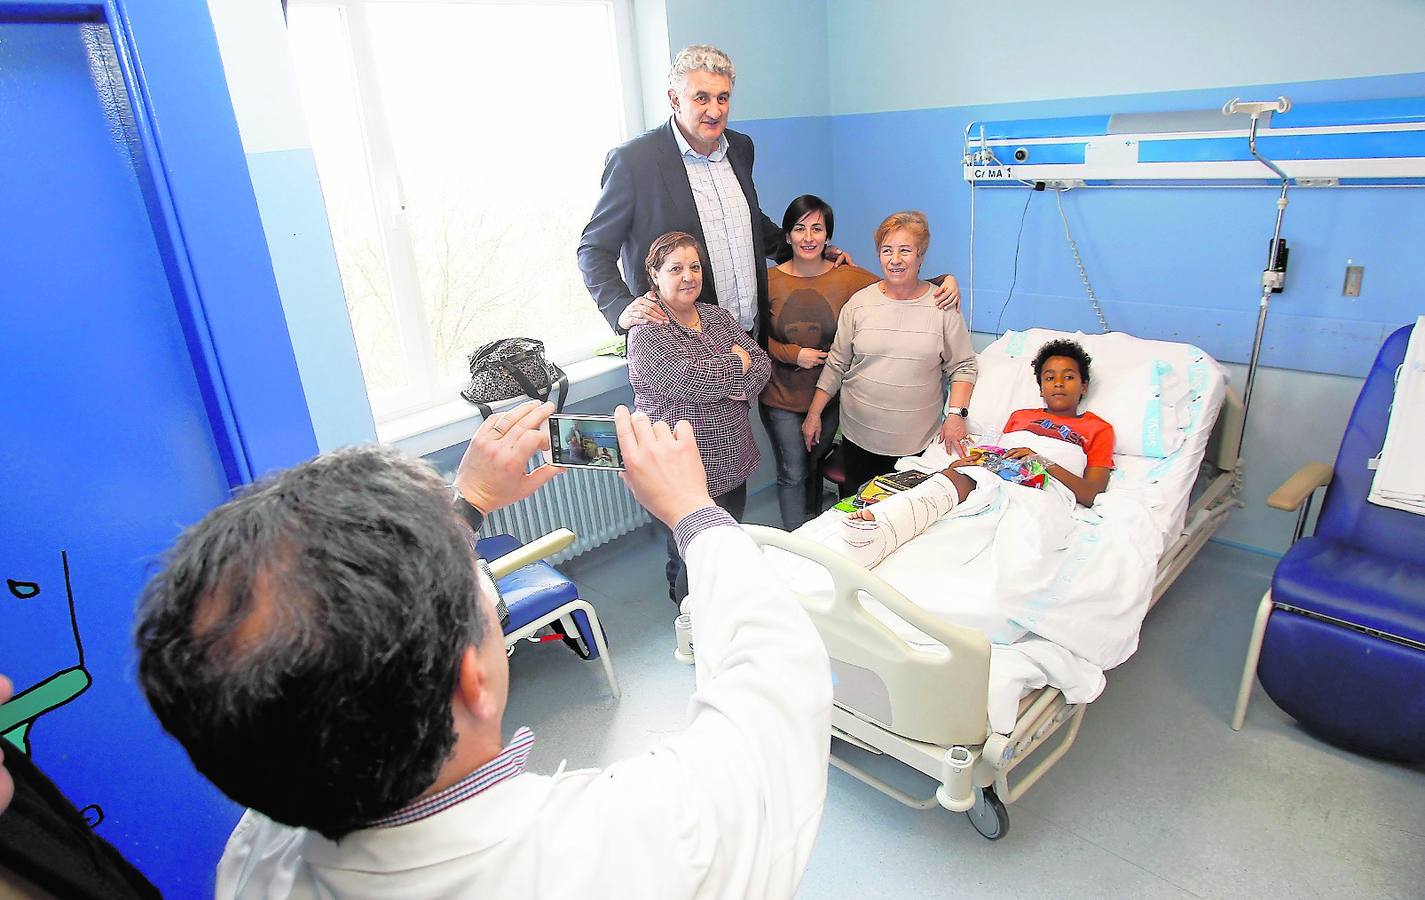 El gerente del Complejo Hospitalario de Palencia, José Jolín, fotografía con un móvil a Romay con Kenai, un niño de 11 años, y su familia.